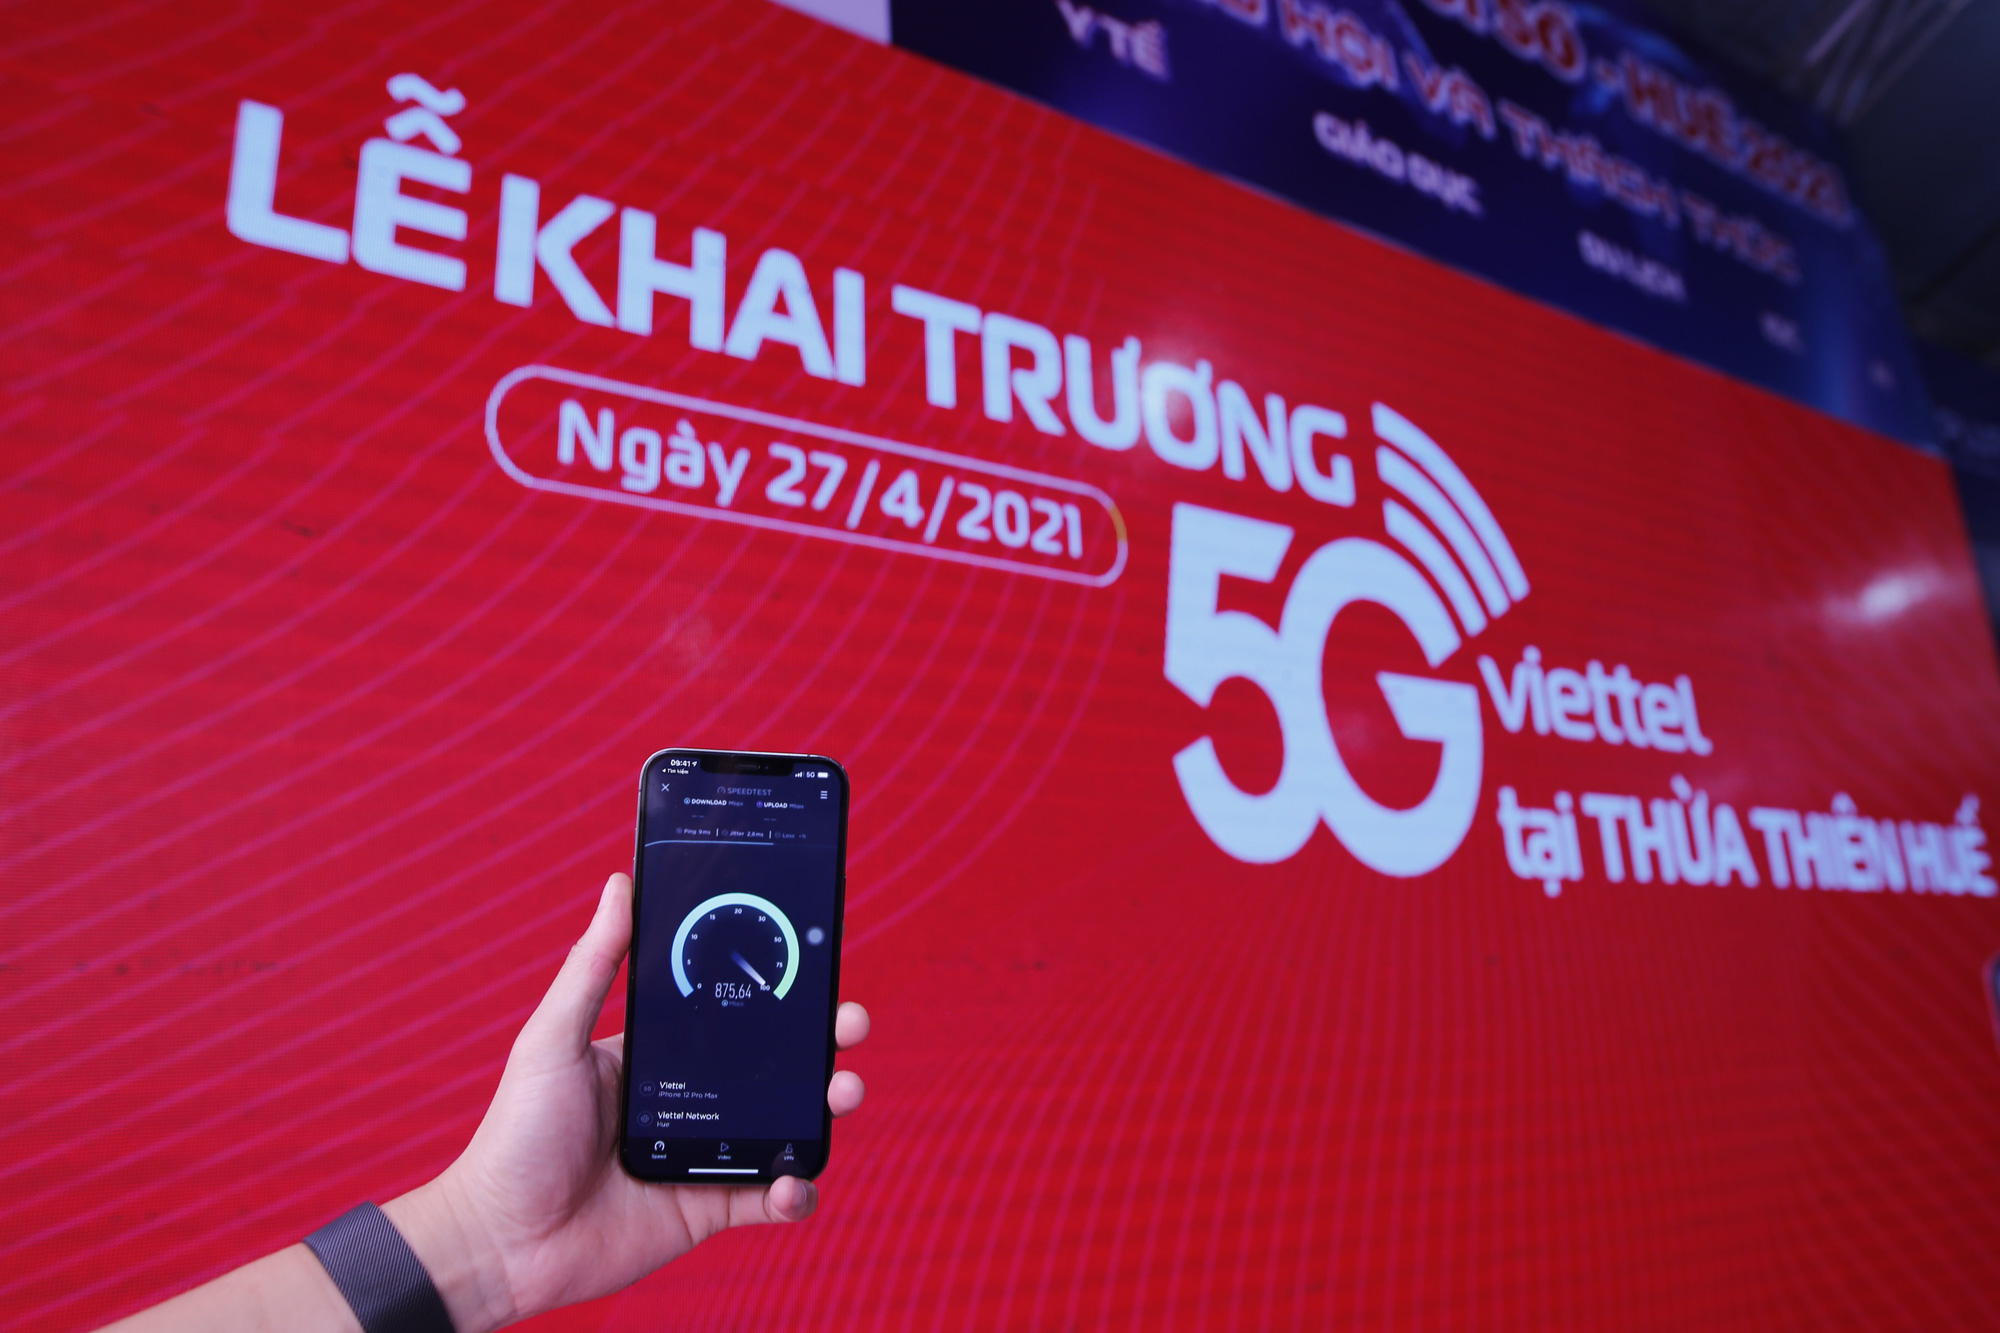 Viettel khai trương mạng 5G tại Thừa Thiên Huế, chính thức cung cấp 5G trên các thiết bị iPhone - Ảnh 2.